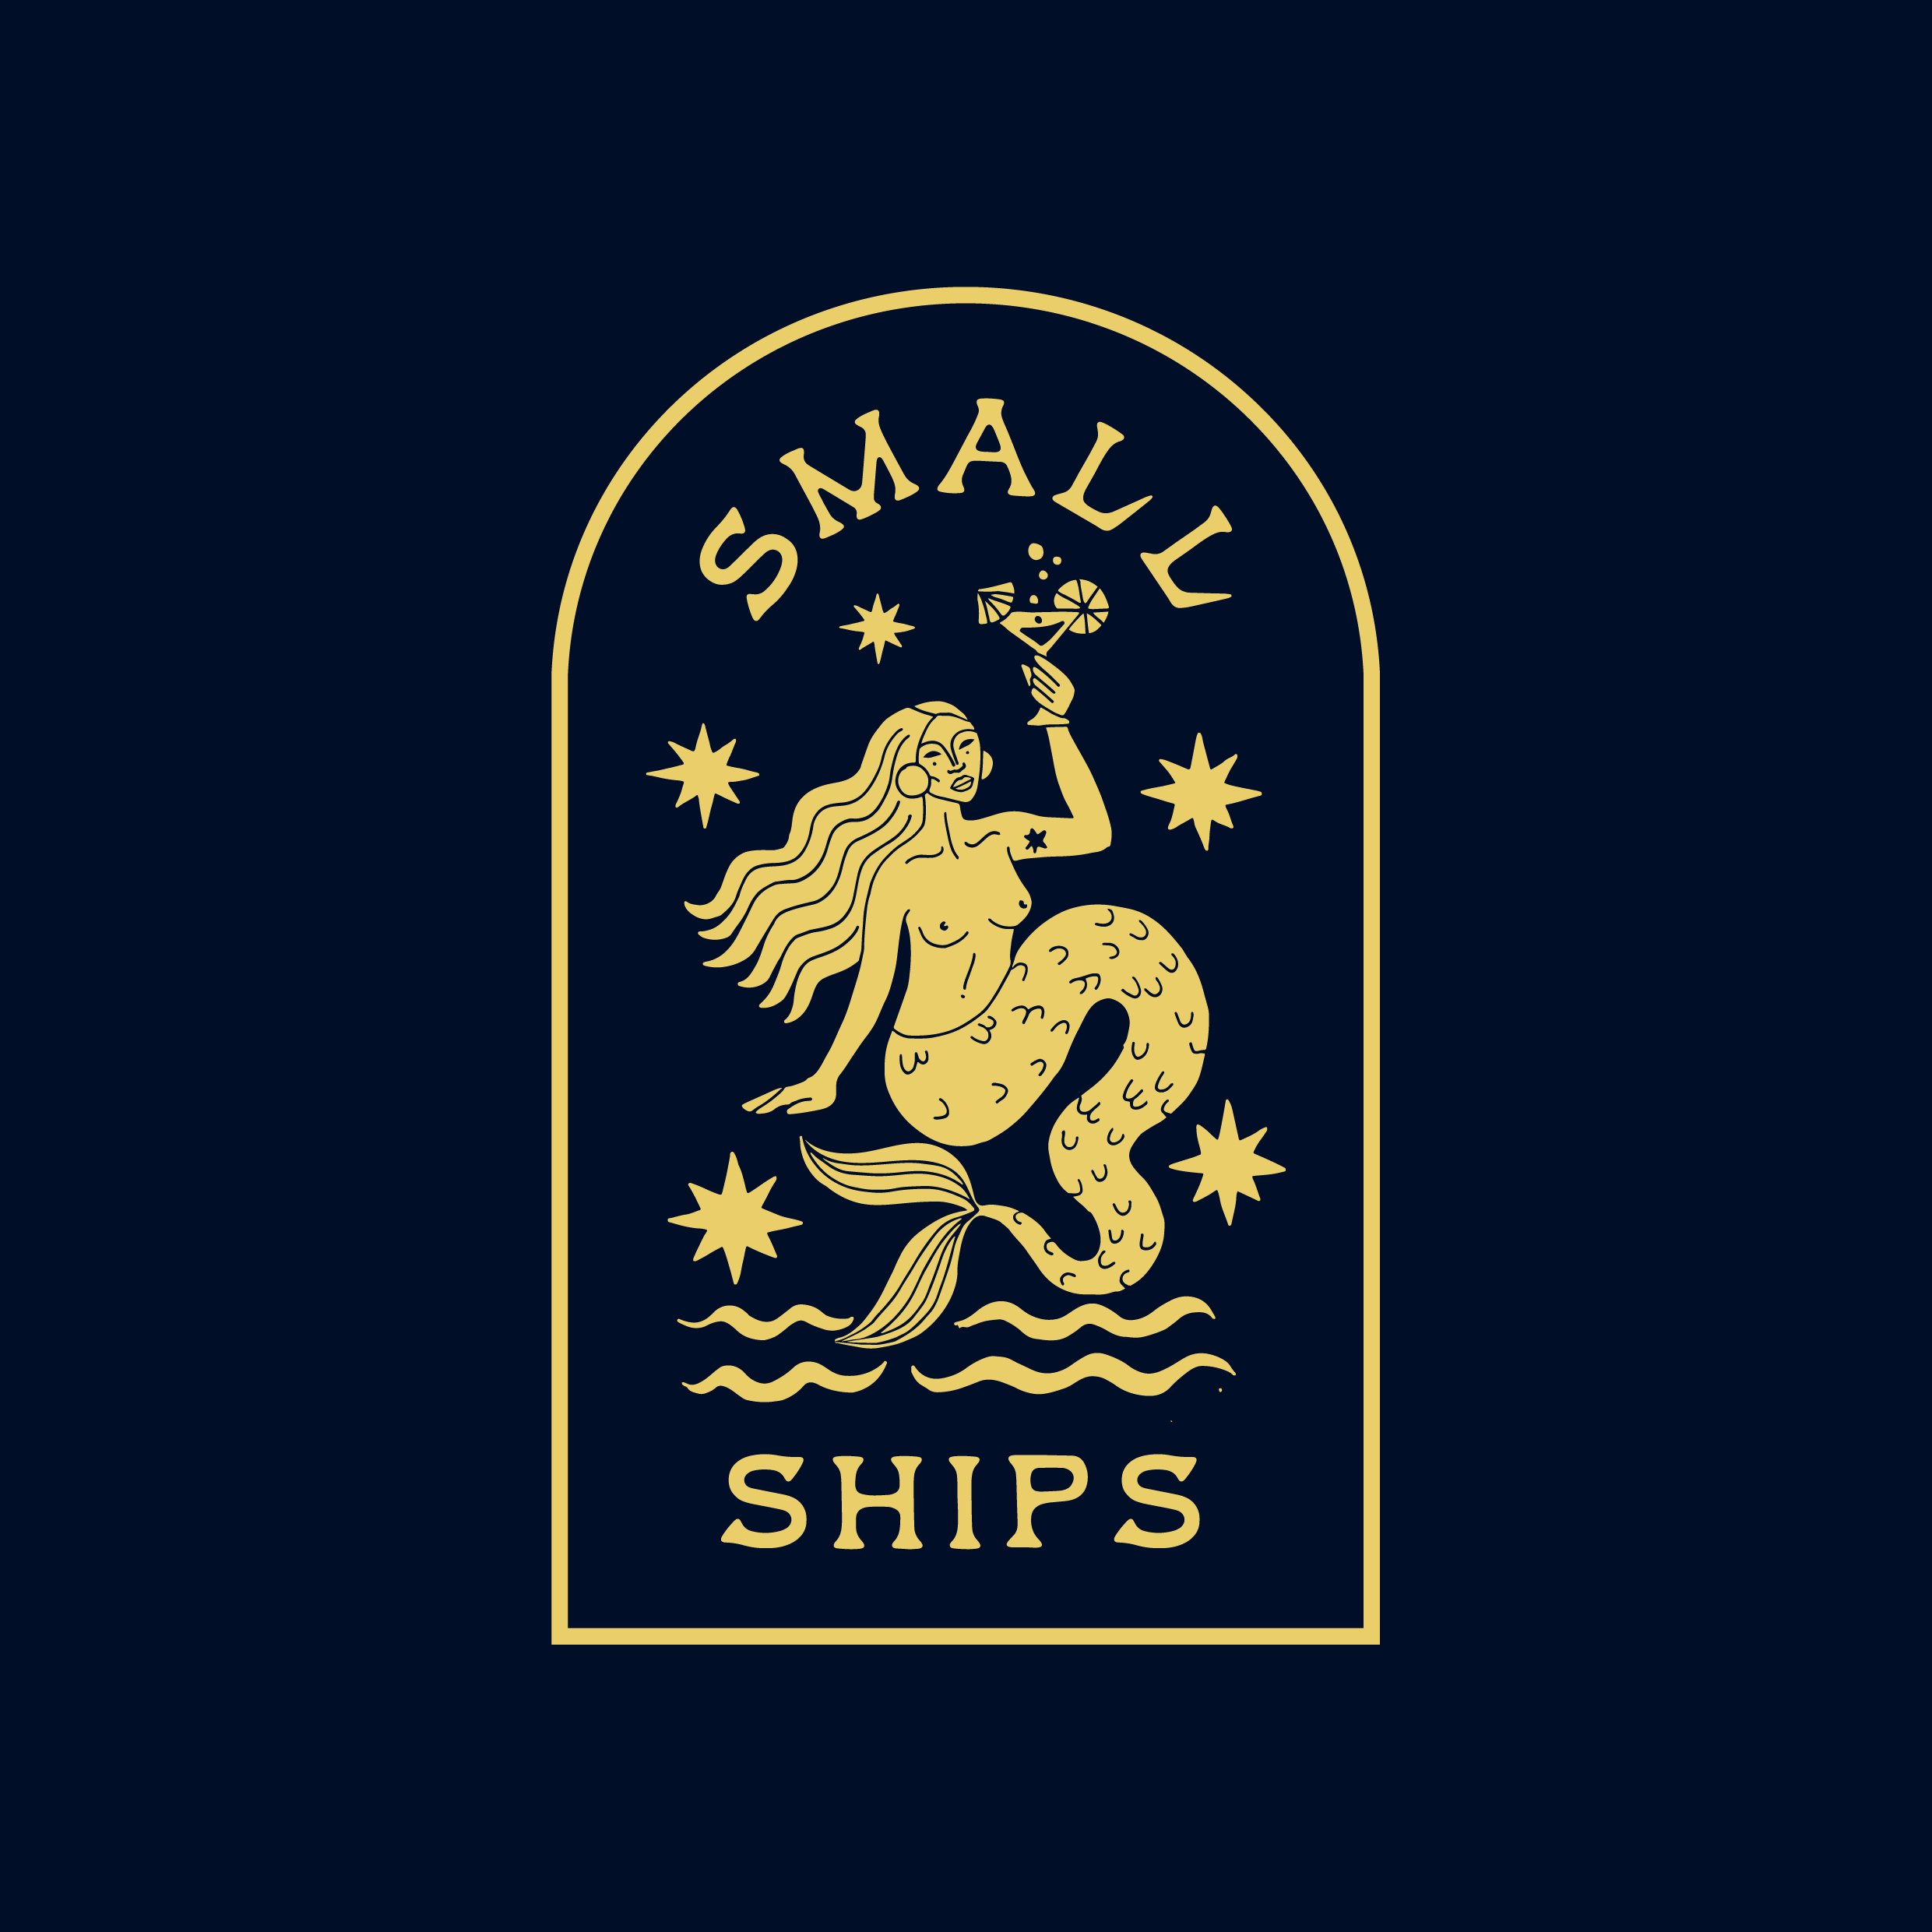 smallships-01.jpg